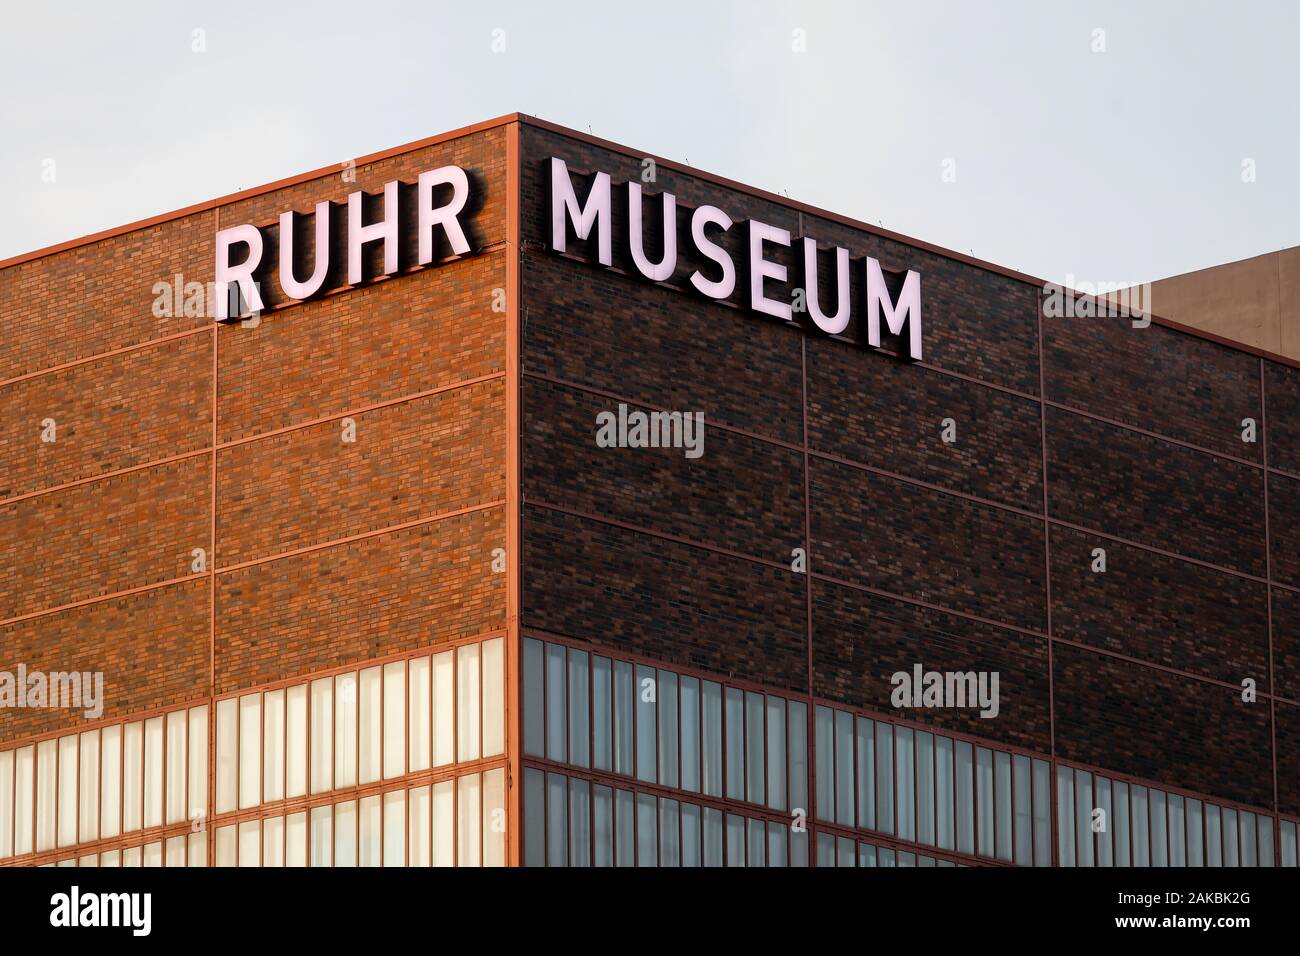 Essen, Ruhrgebiet, Nordrhein-Westfalen, Deutschland - Ruhr Museum auf Zeche Zollverein, die zum UNESCO-Weltkulturerbe Zollverein, beleuchtete Schriftzug auf den Fa Stockfoto